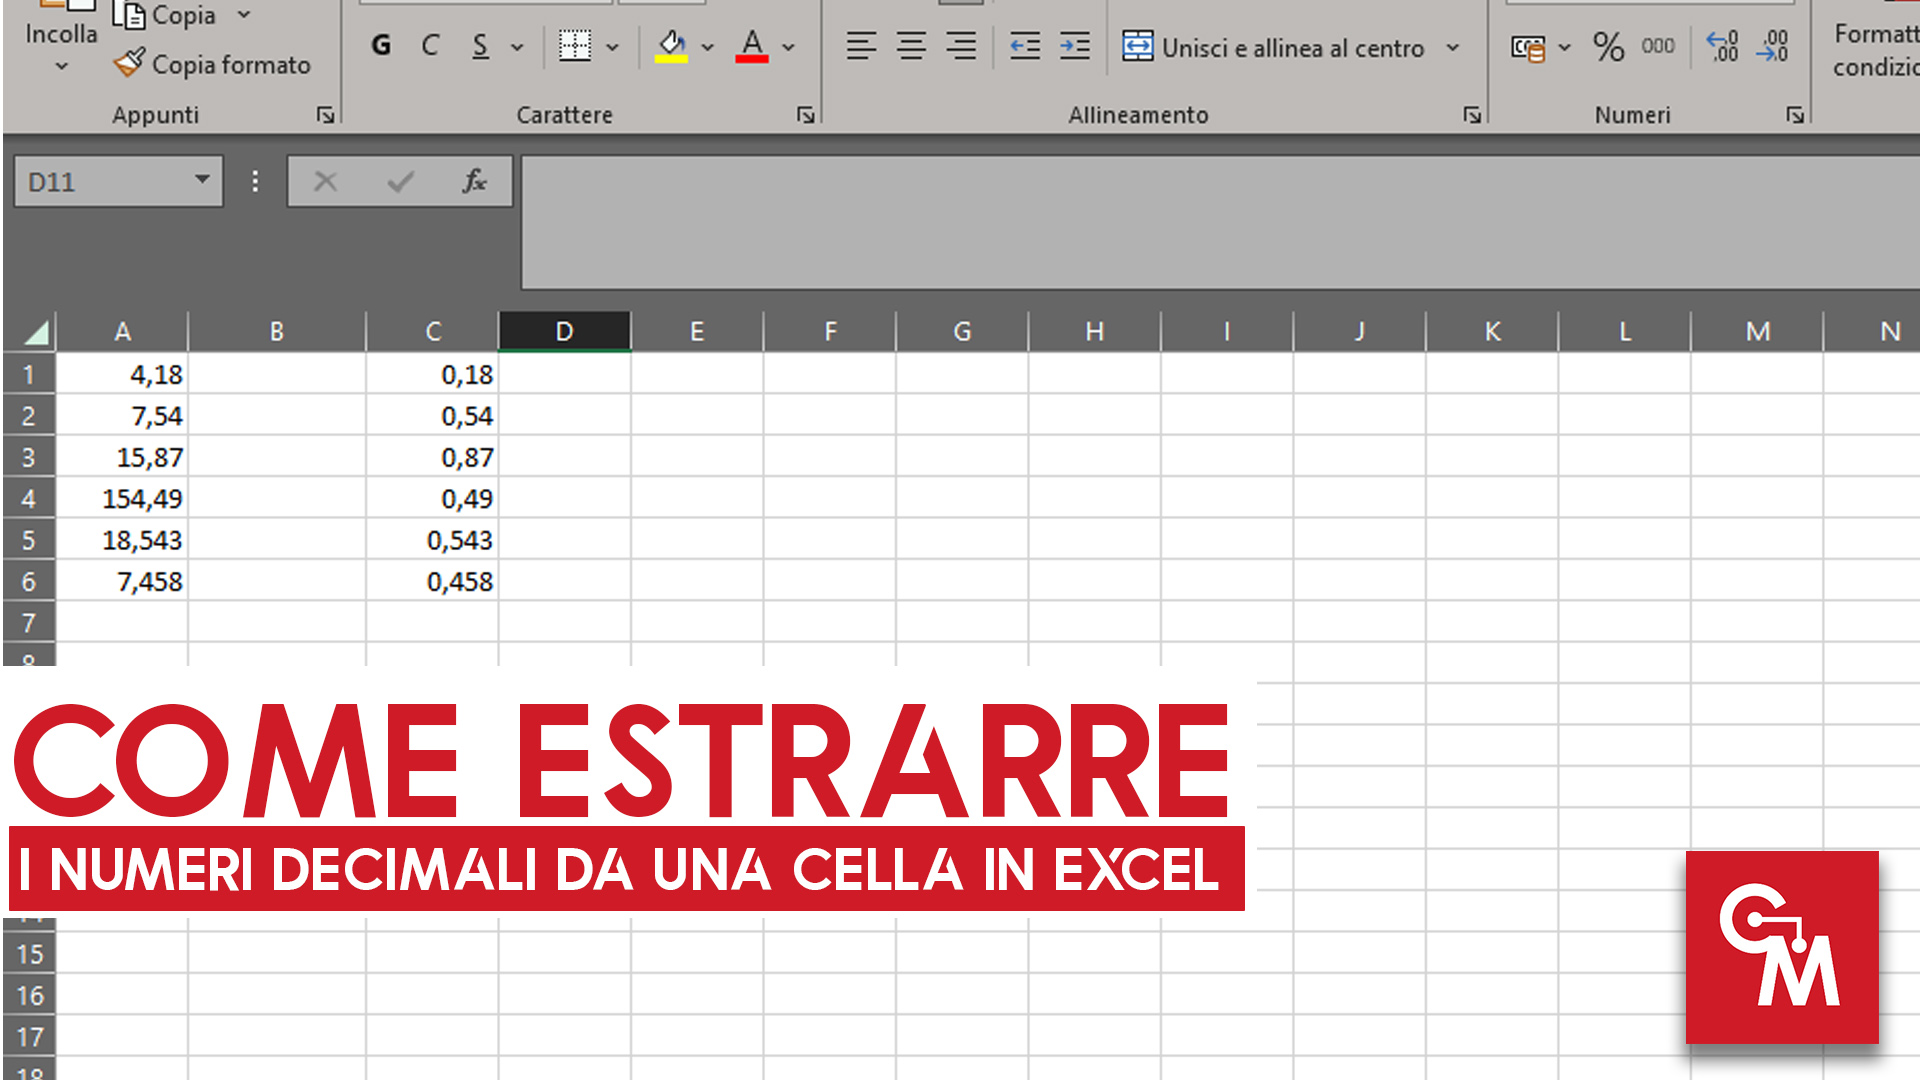 Come estrarre i numeri decimali da una cella in Excel